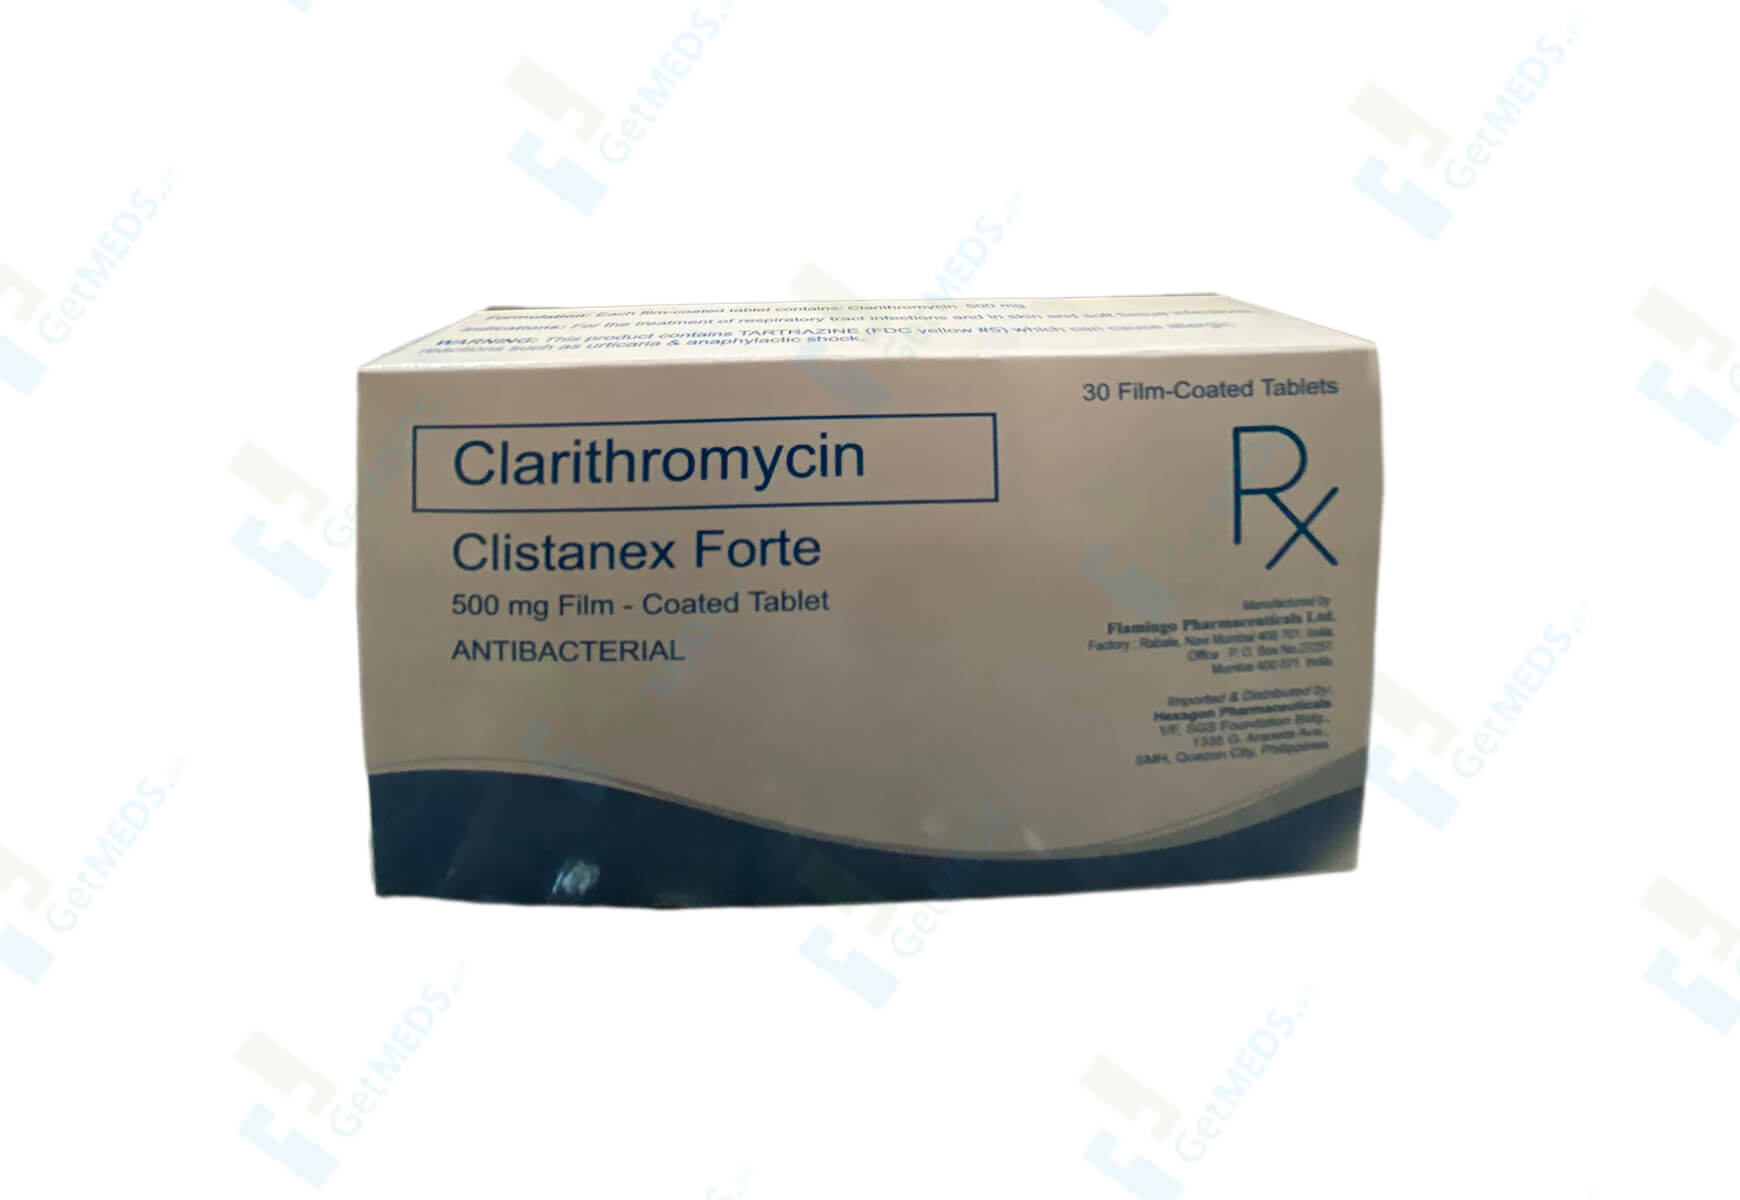 Clistanex Forte